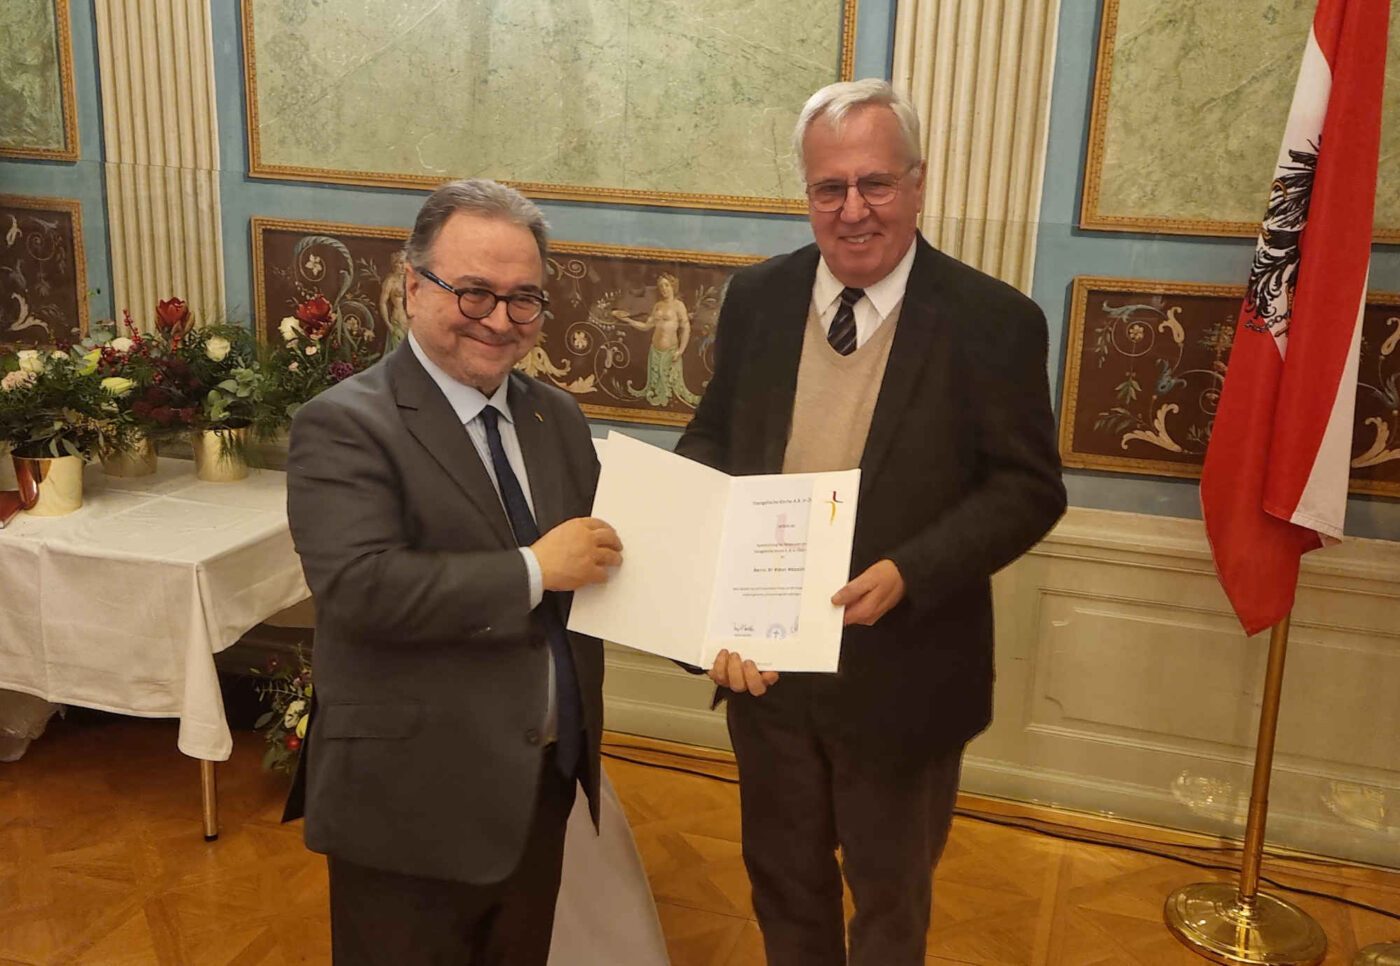 Freude über die Auszeichnung: Oberkirchenrat Klaus Heussler (re.) mit Bischof Michael Chalupka. (Foto: epd/T. Dasek)